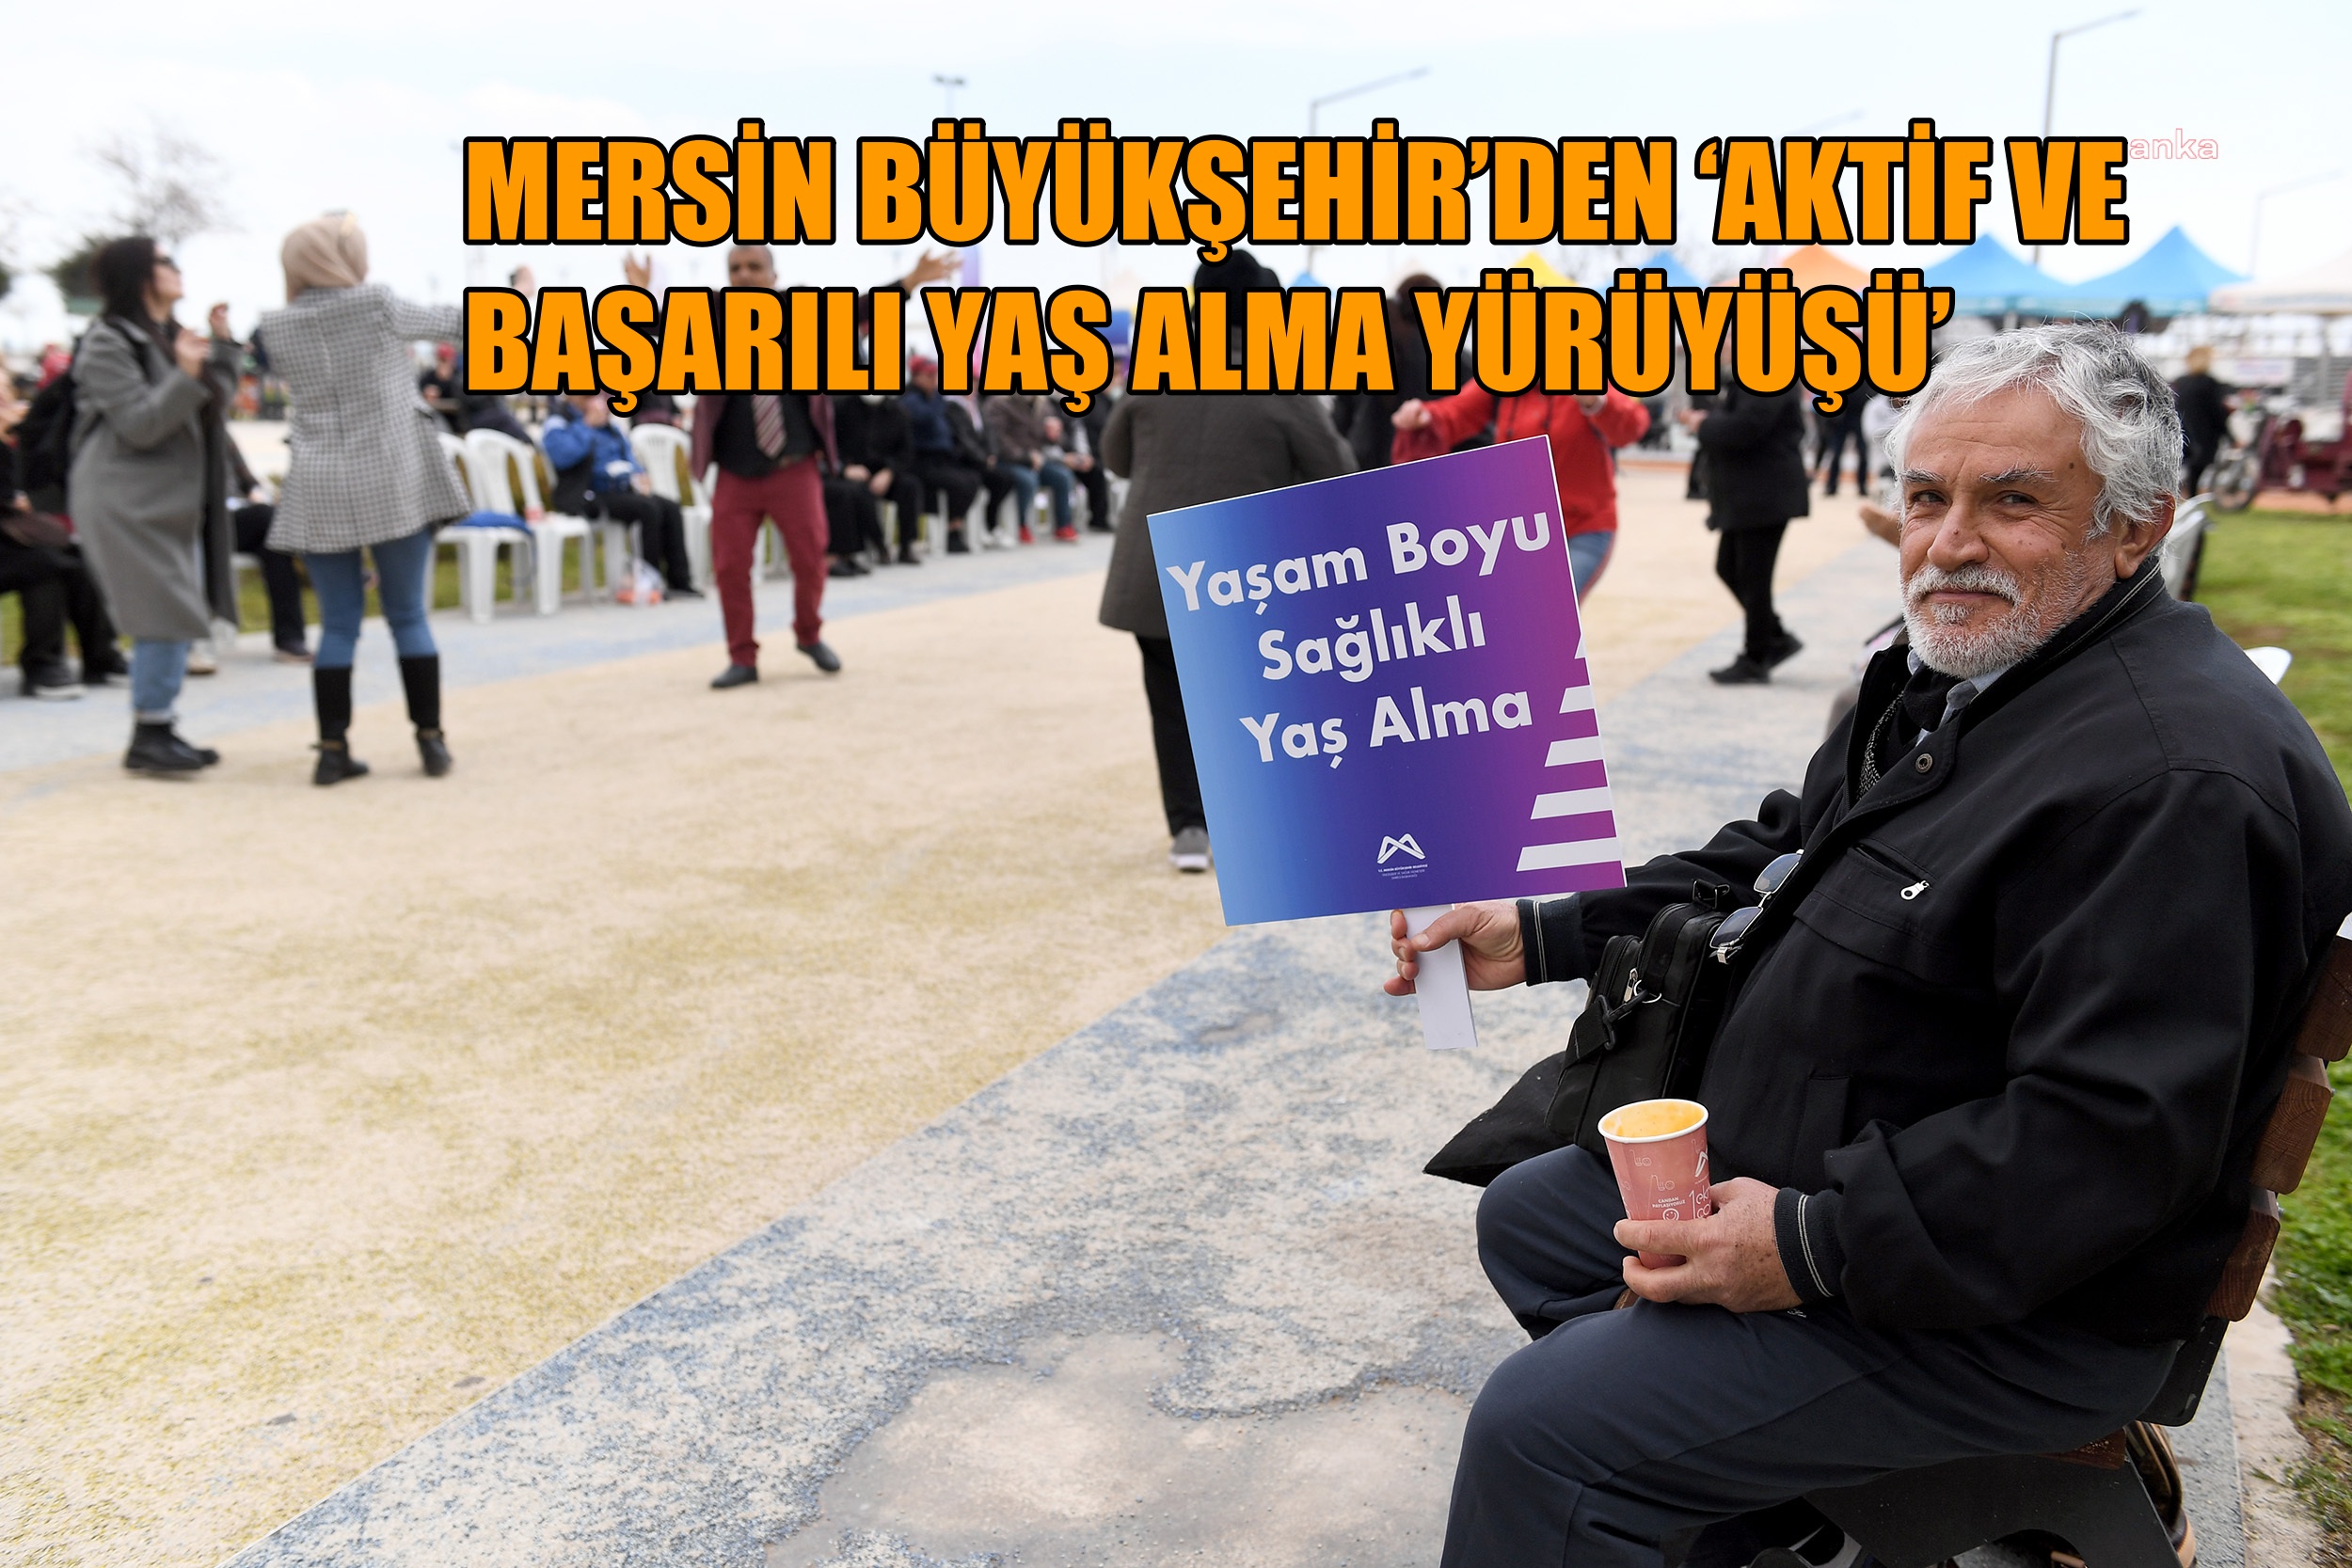 Mersin Büyükşehir'den 'Aktif ve başarılı yaş alma yürüyüşü'